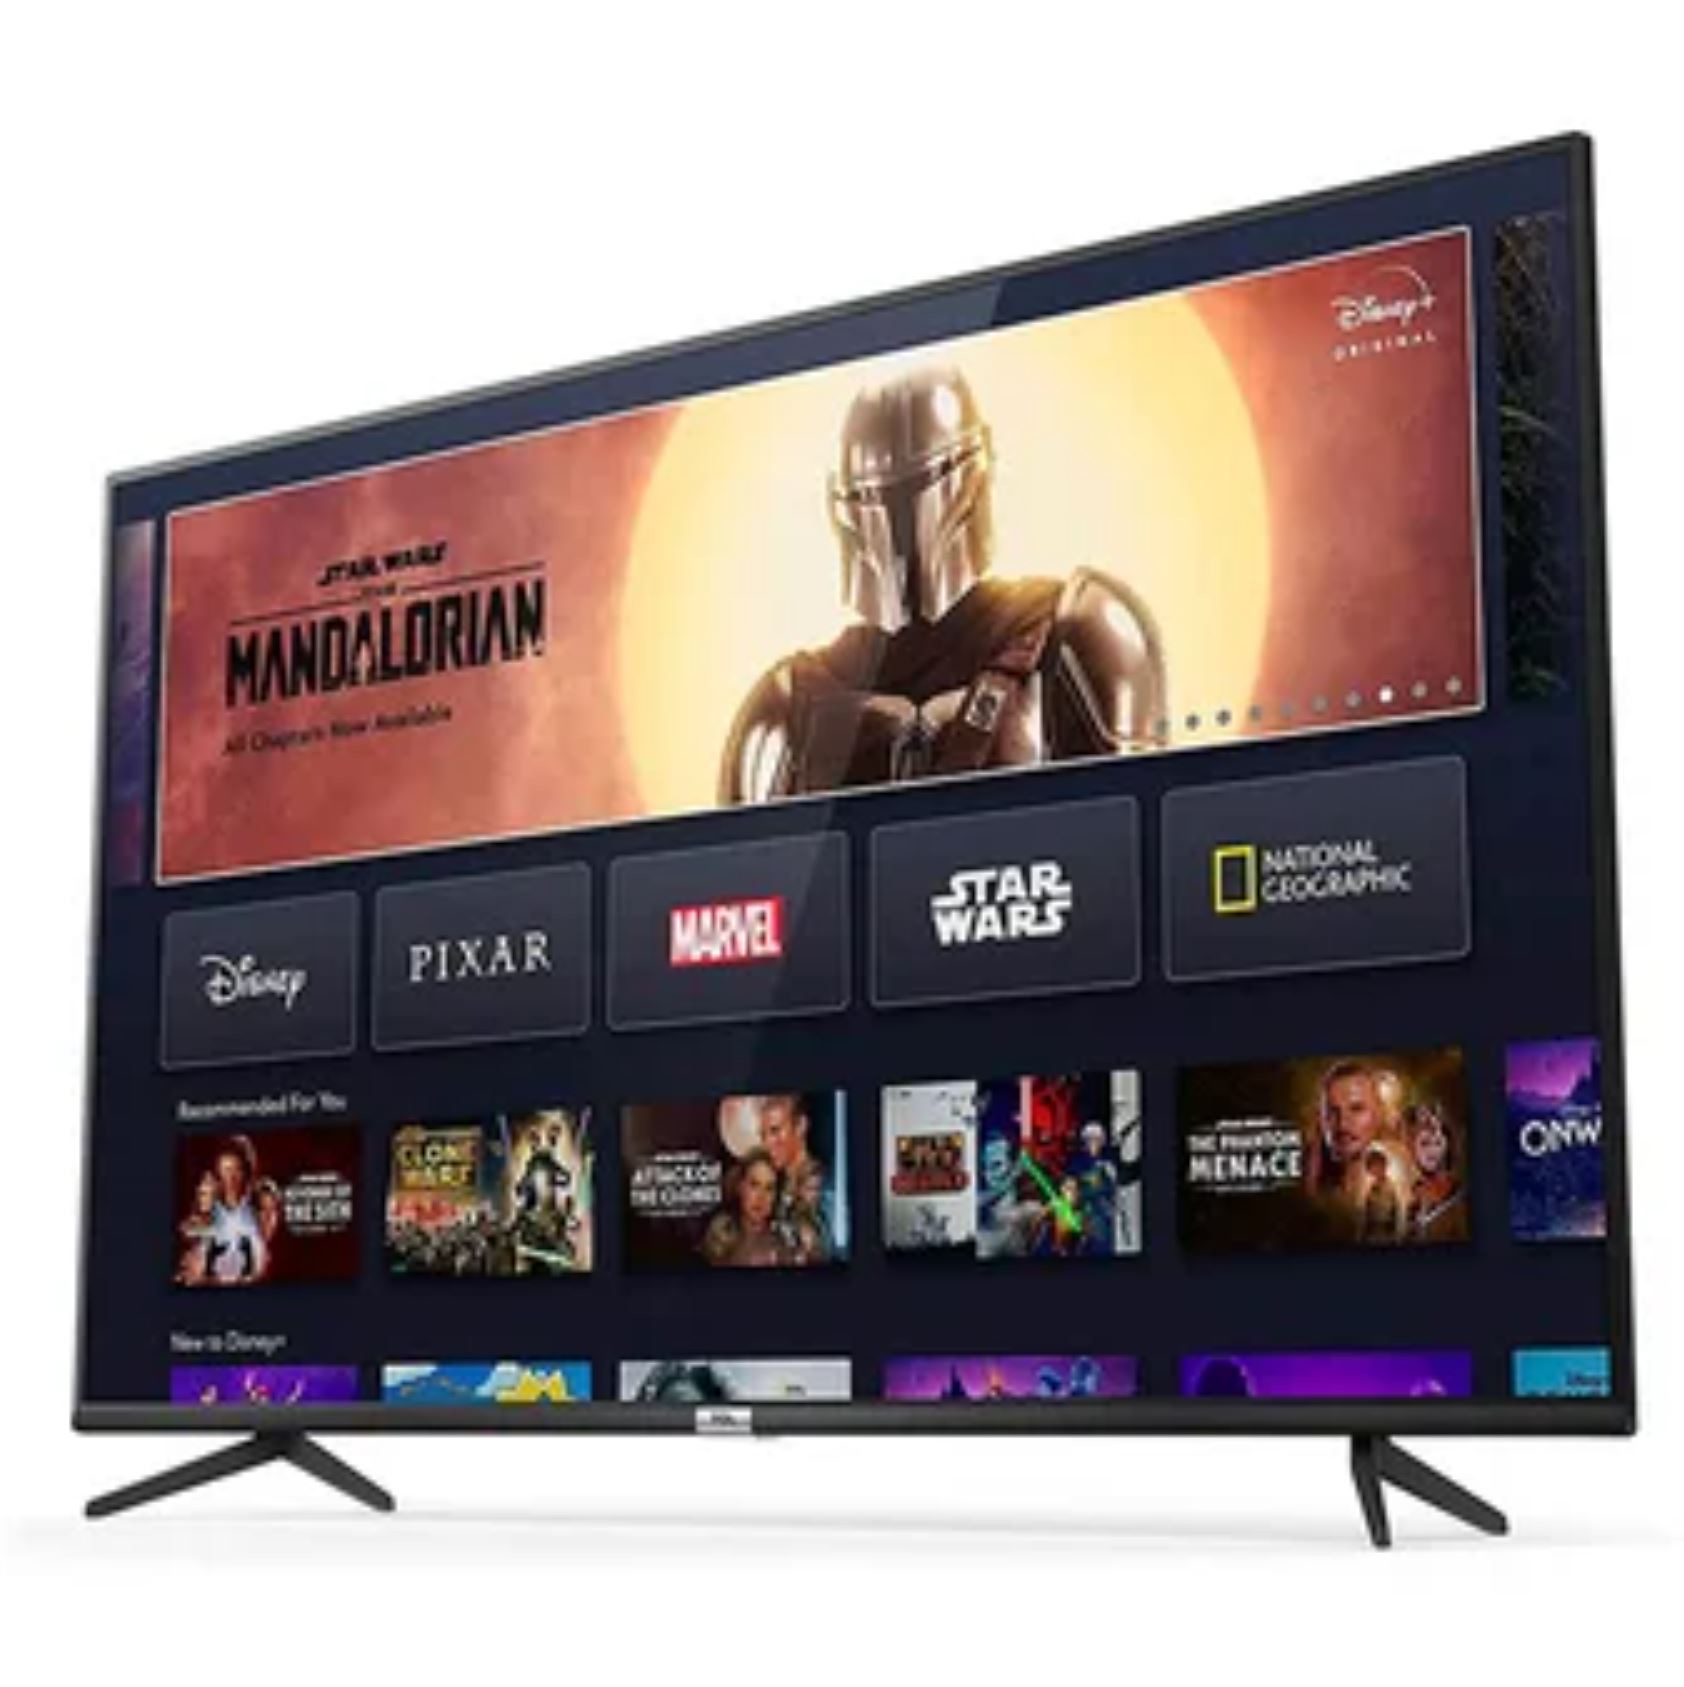 Televisor PHILIPS LED 43'' UHD 4K Smart Tv 43PUD7406 - Oechsle